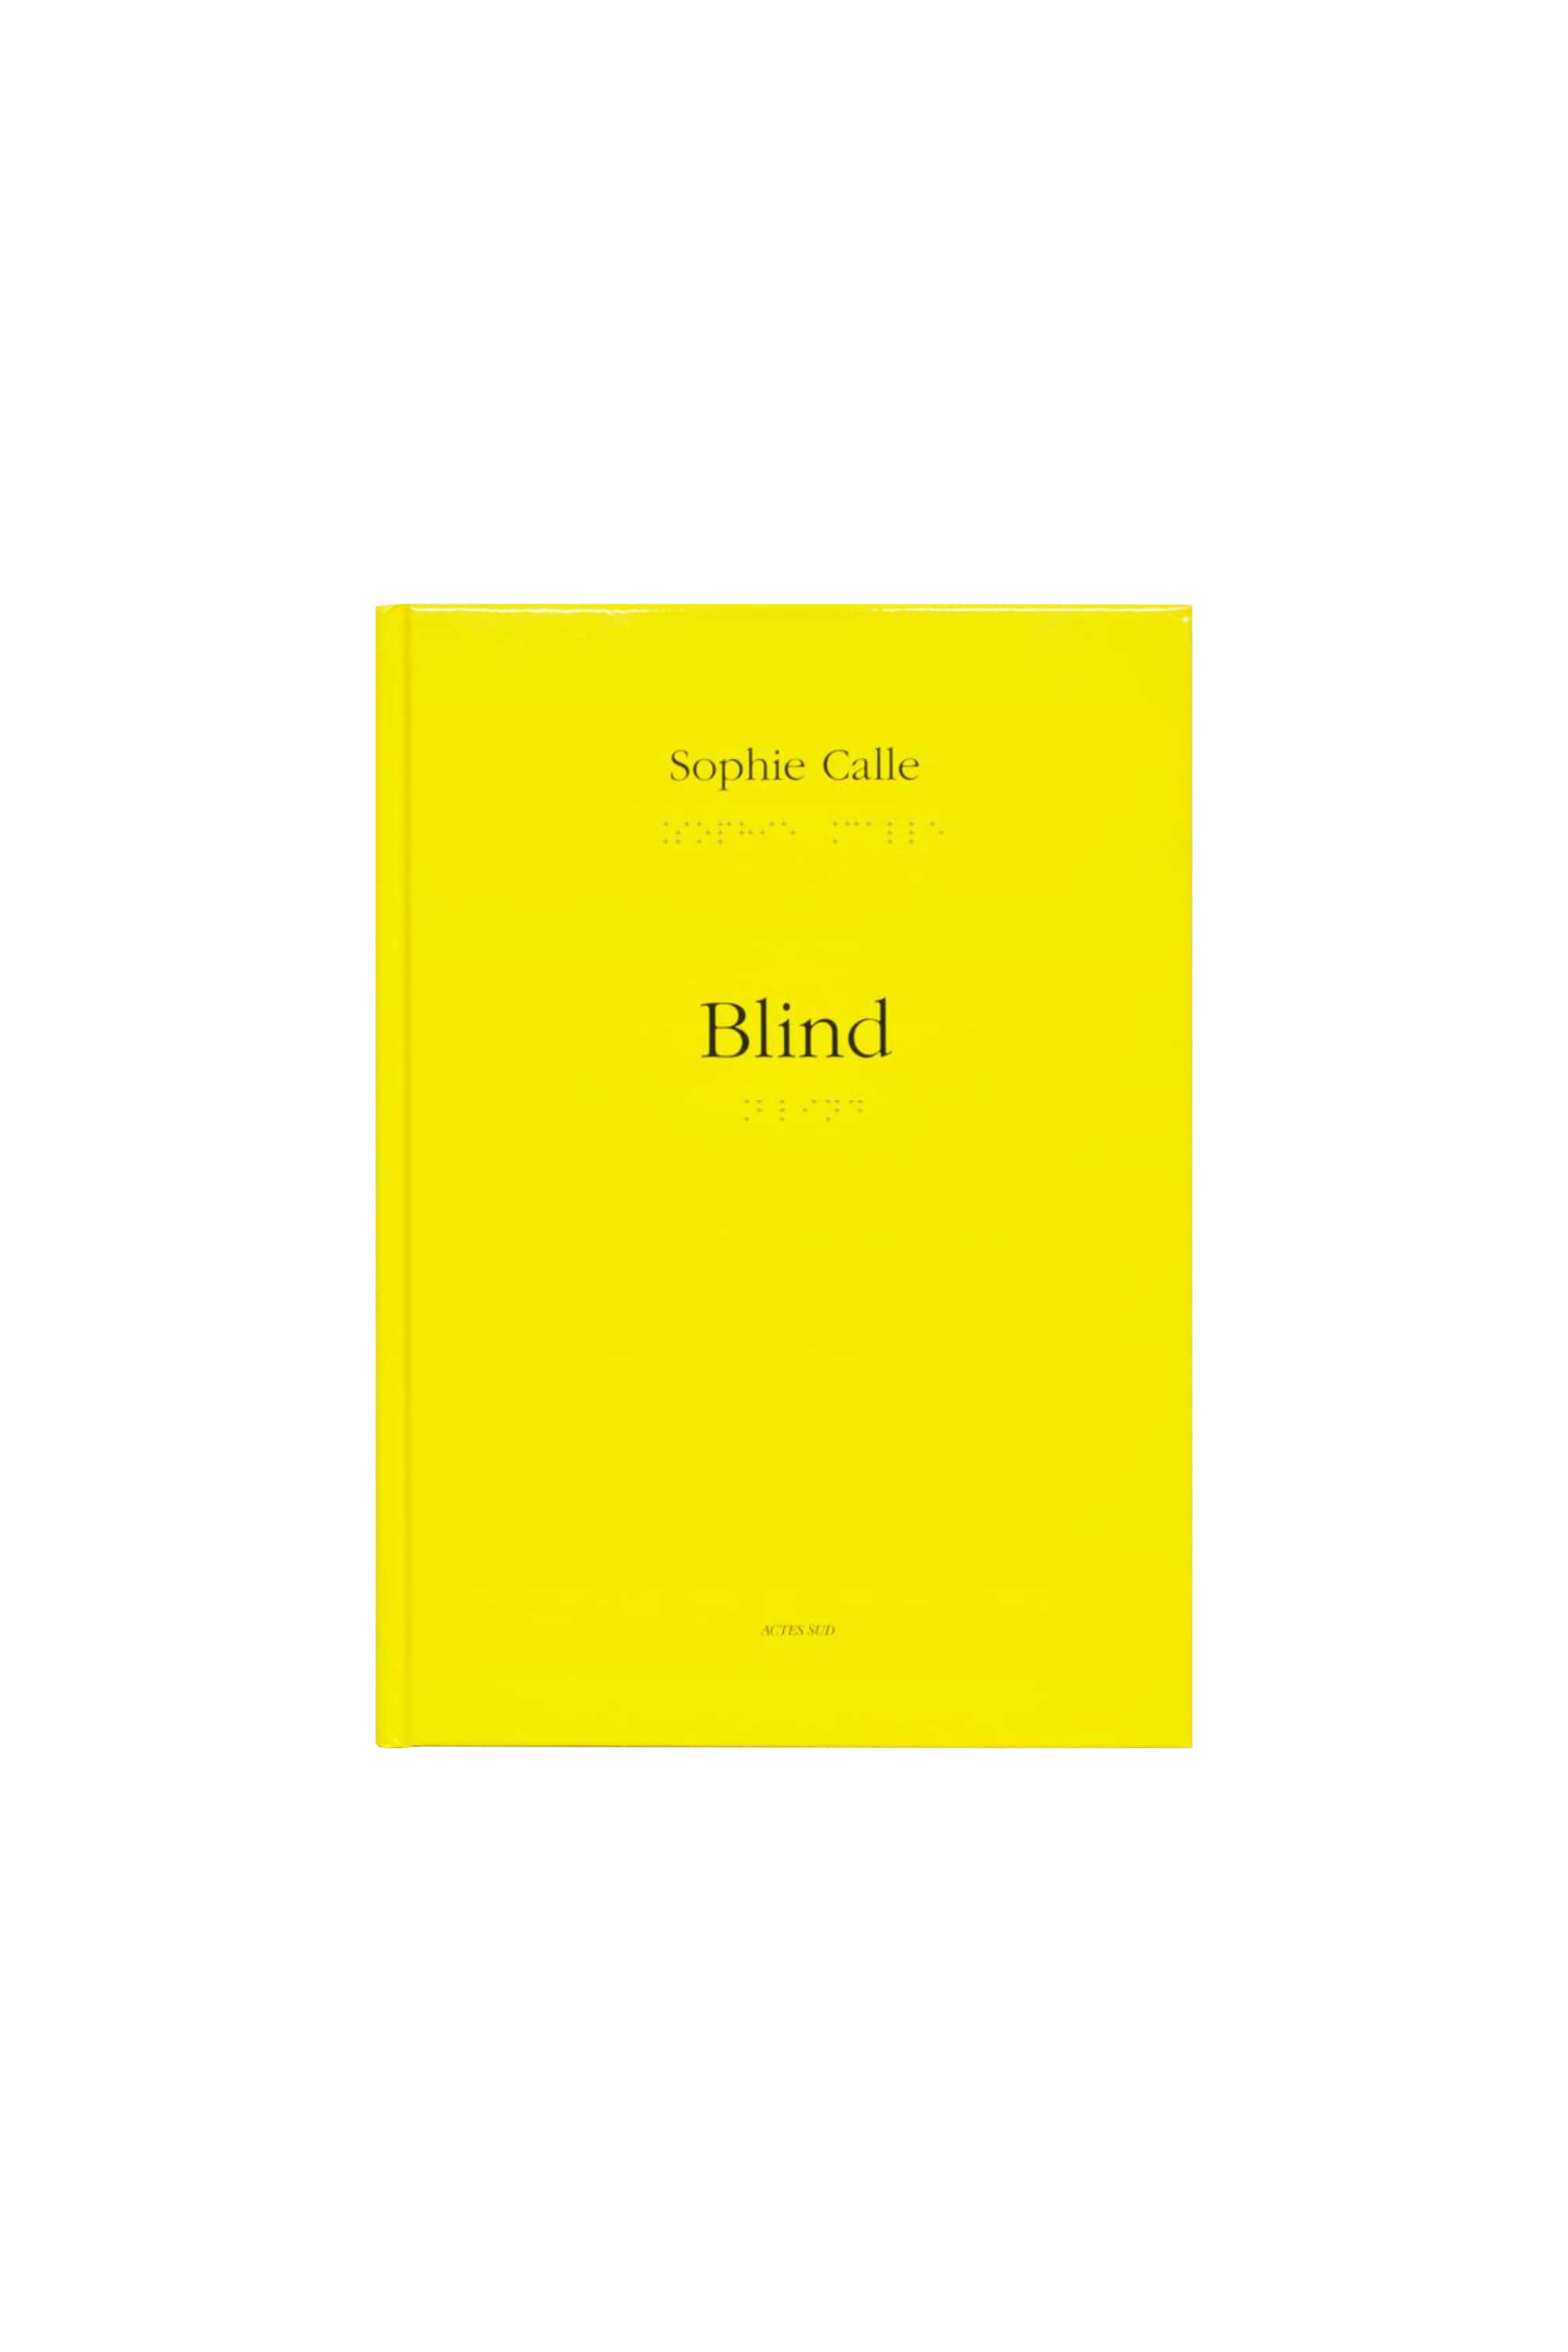 SOPHIE CALLE: BLIND